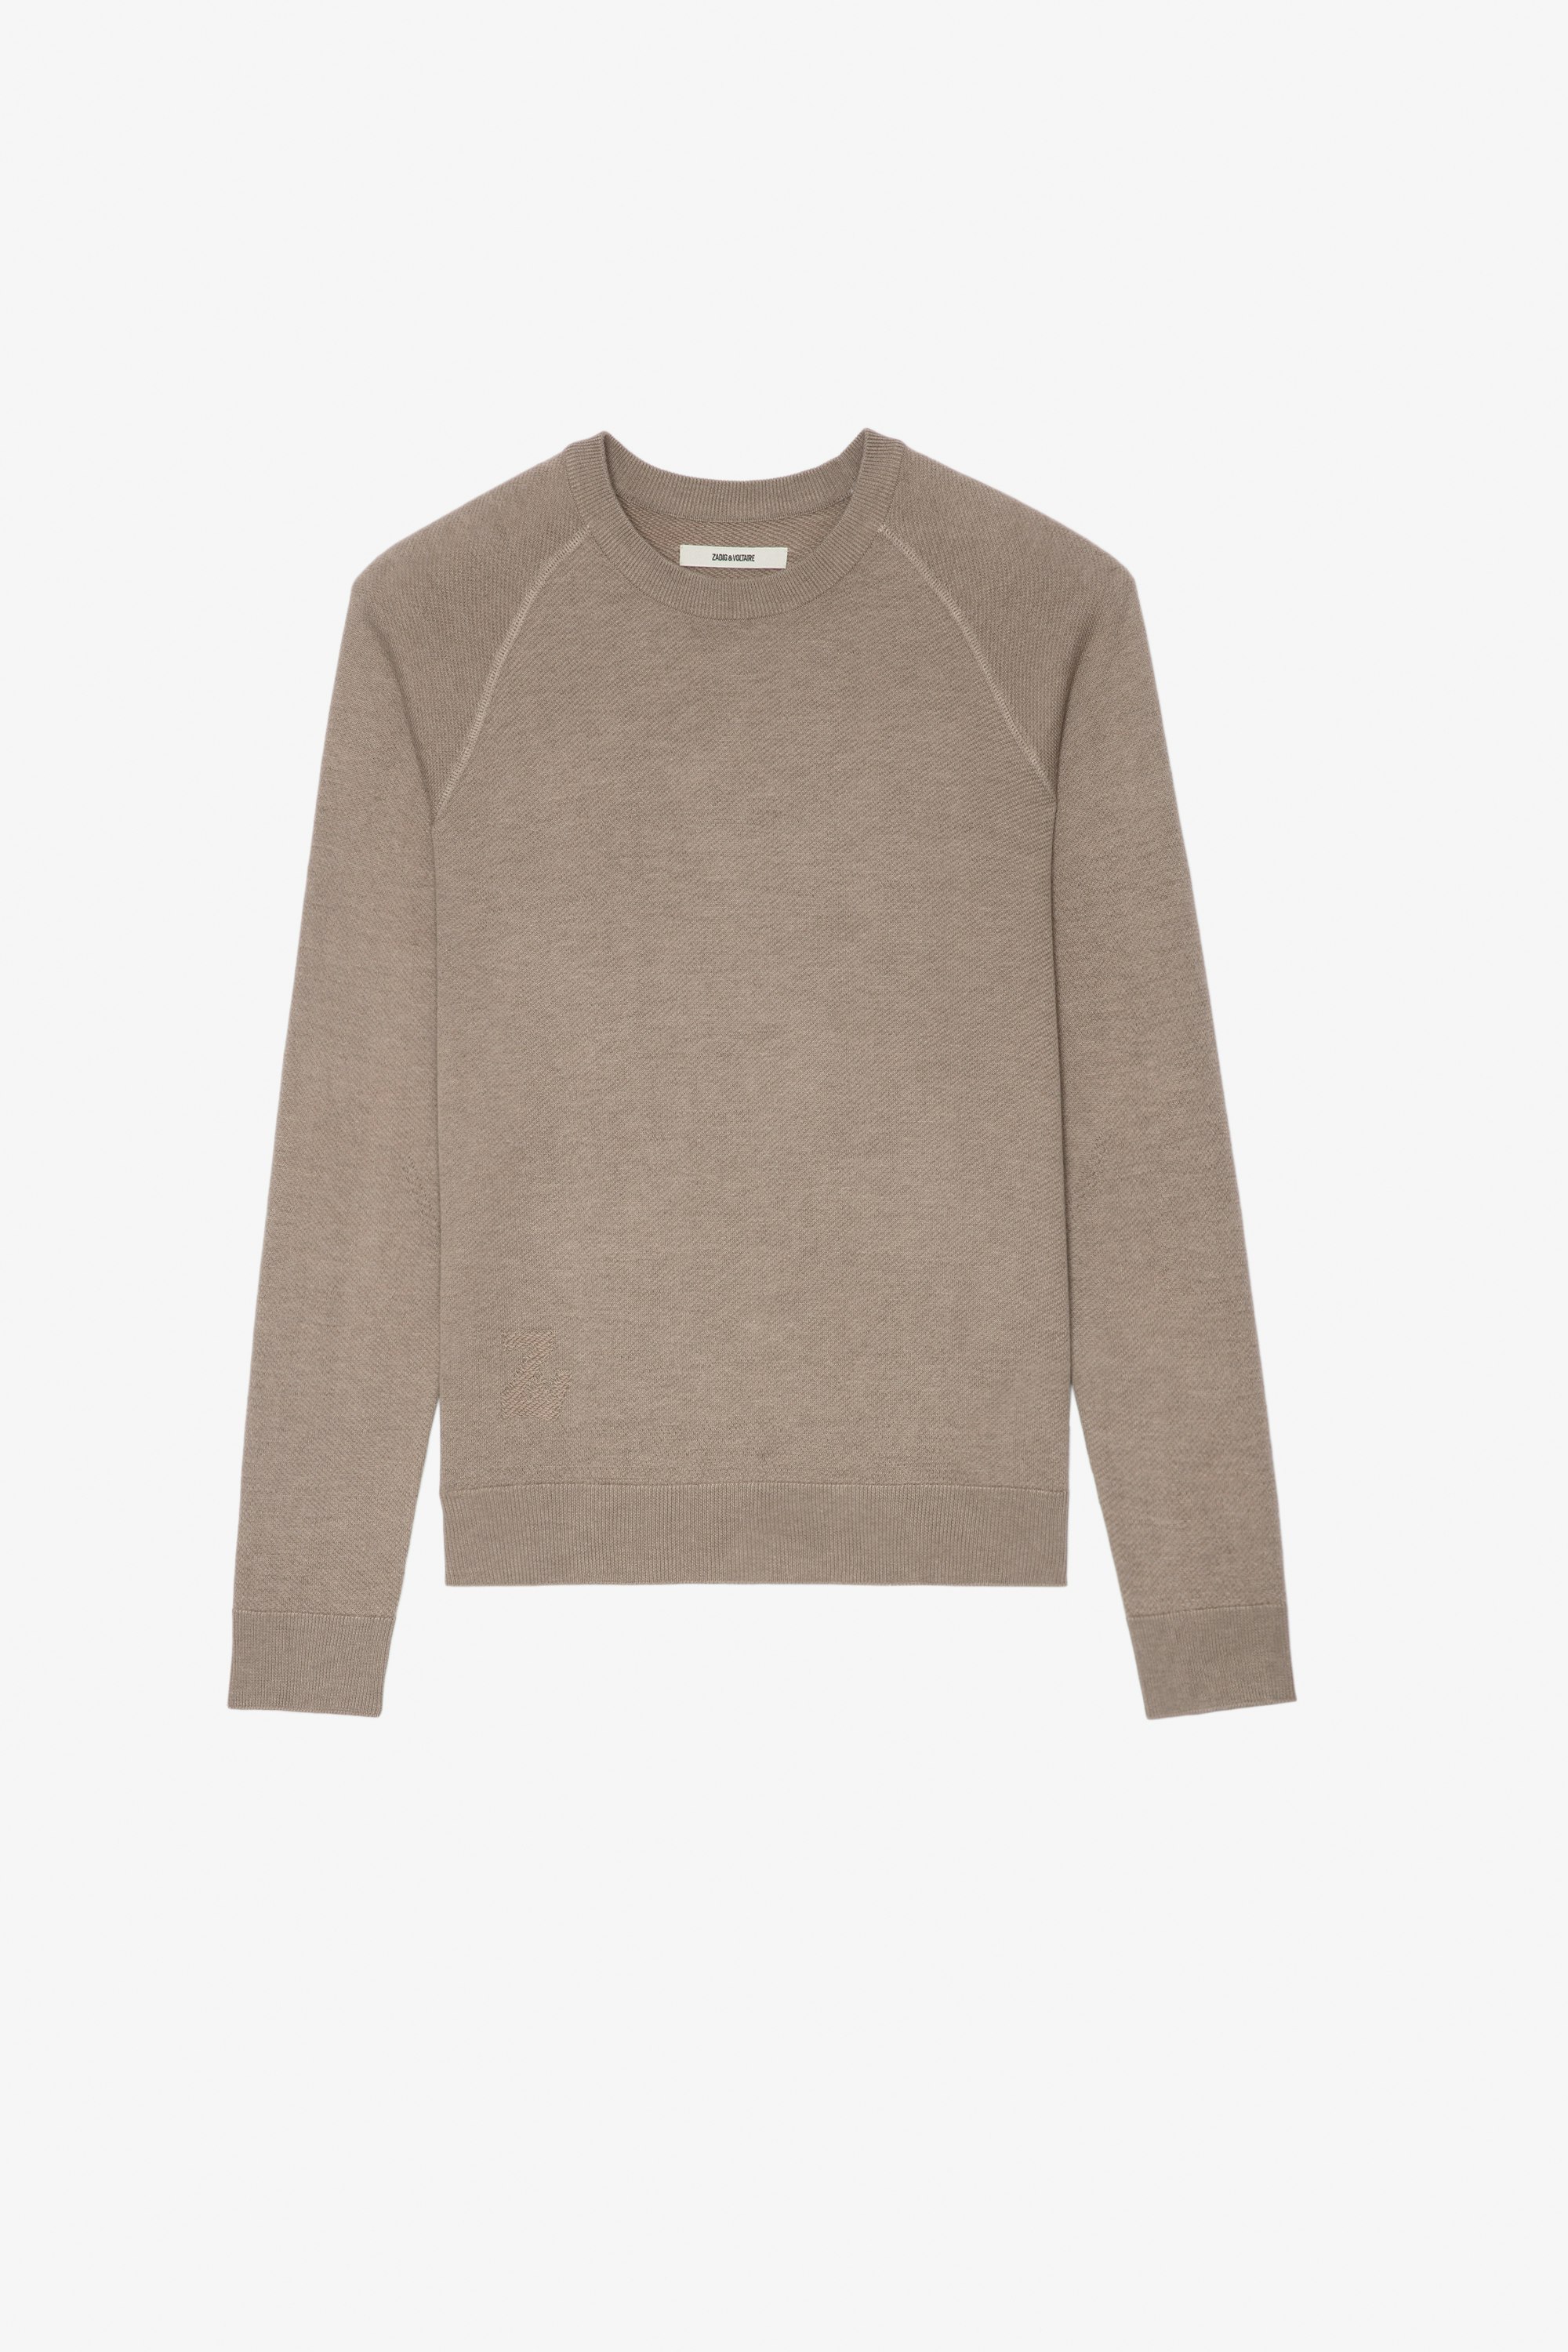 Thomaso Sweater undefined